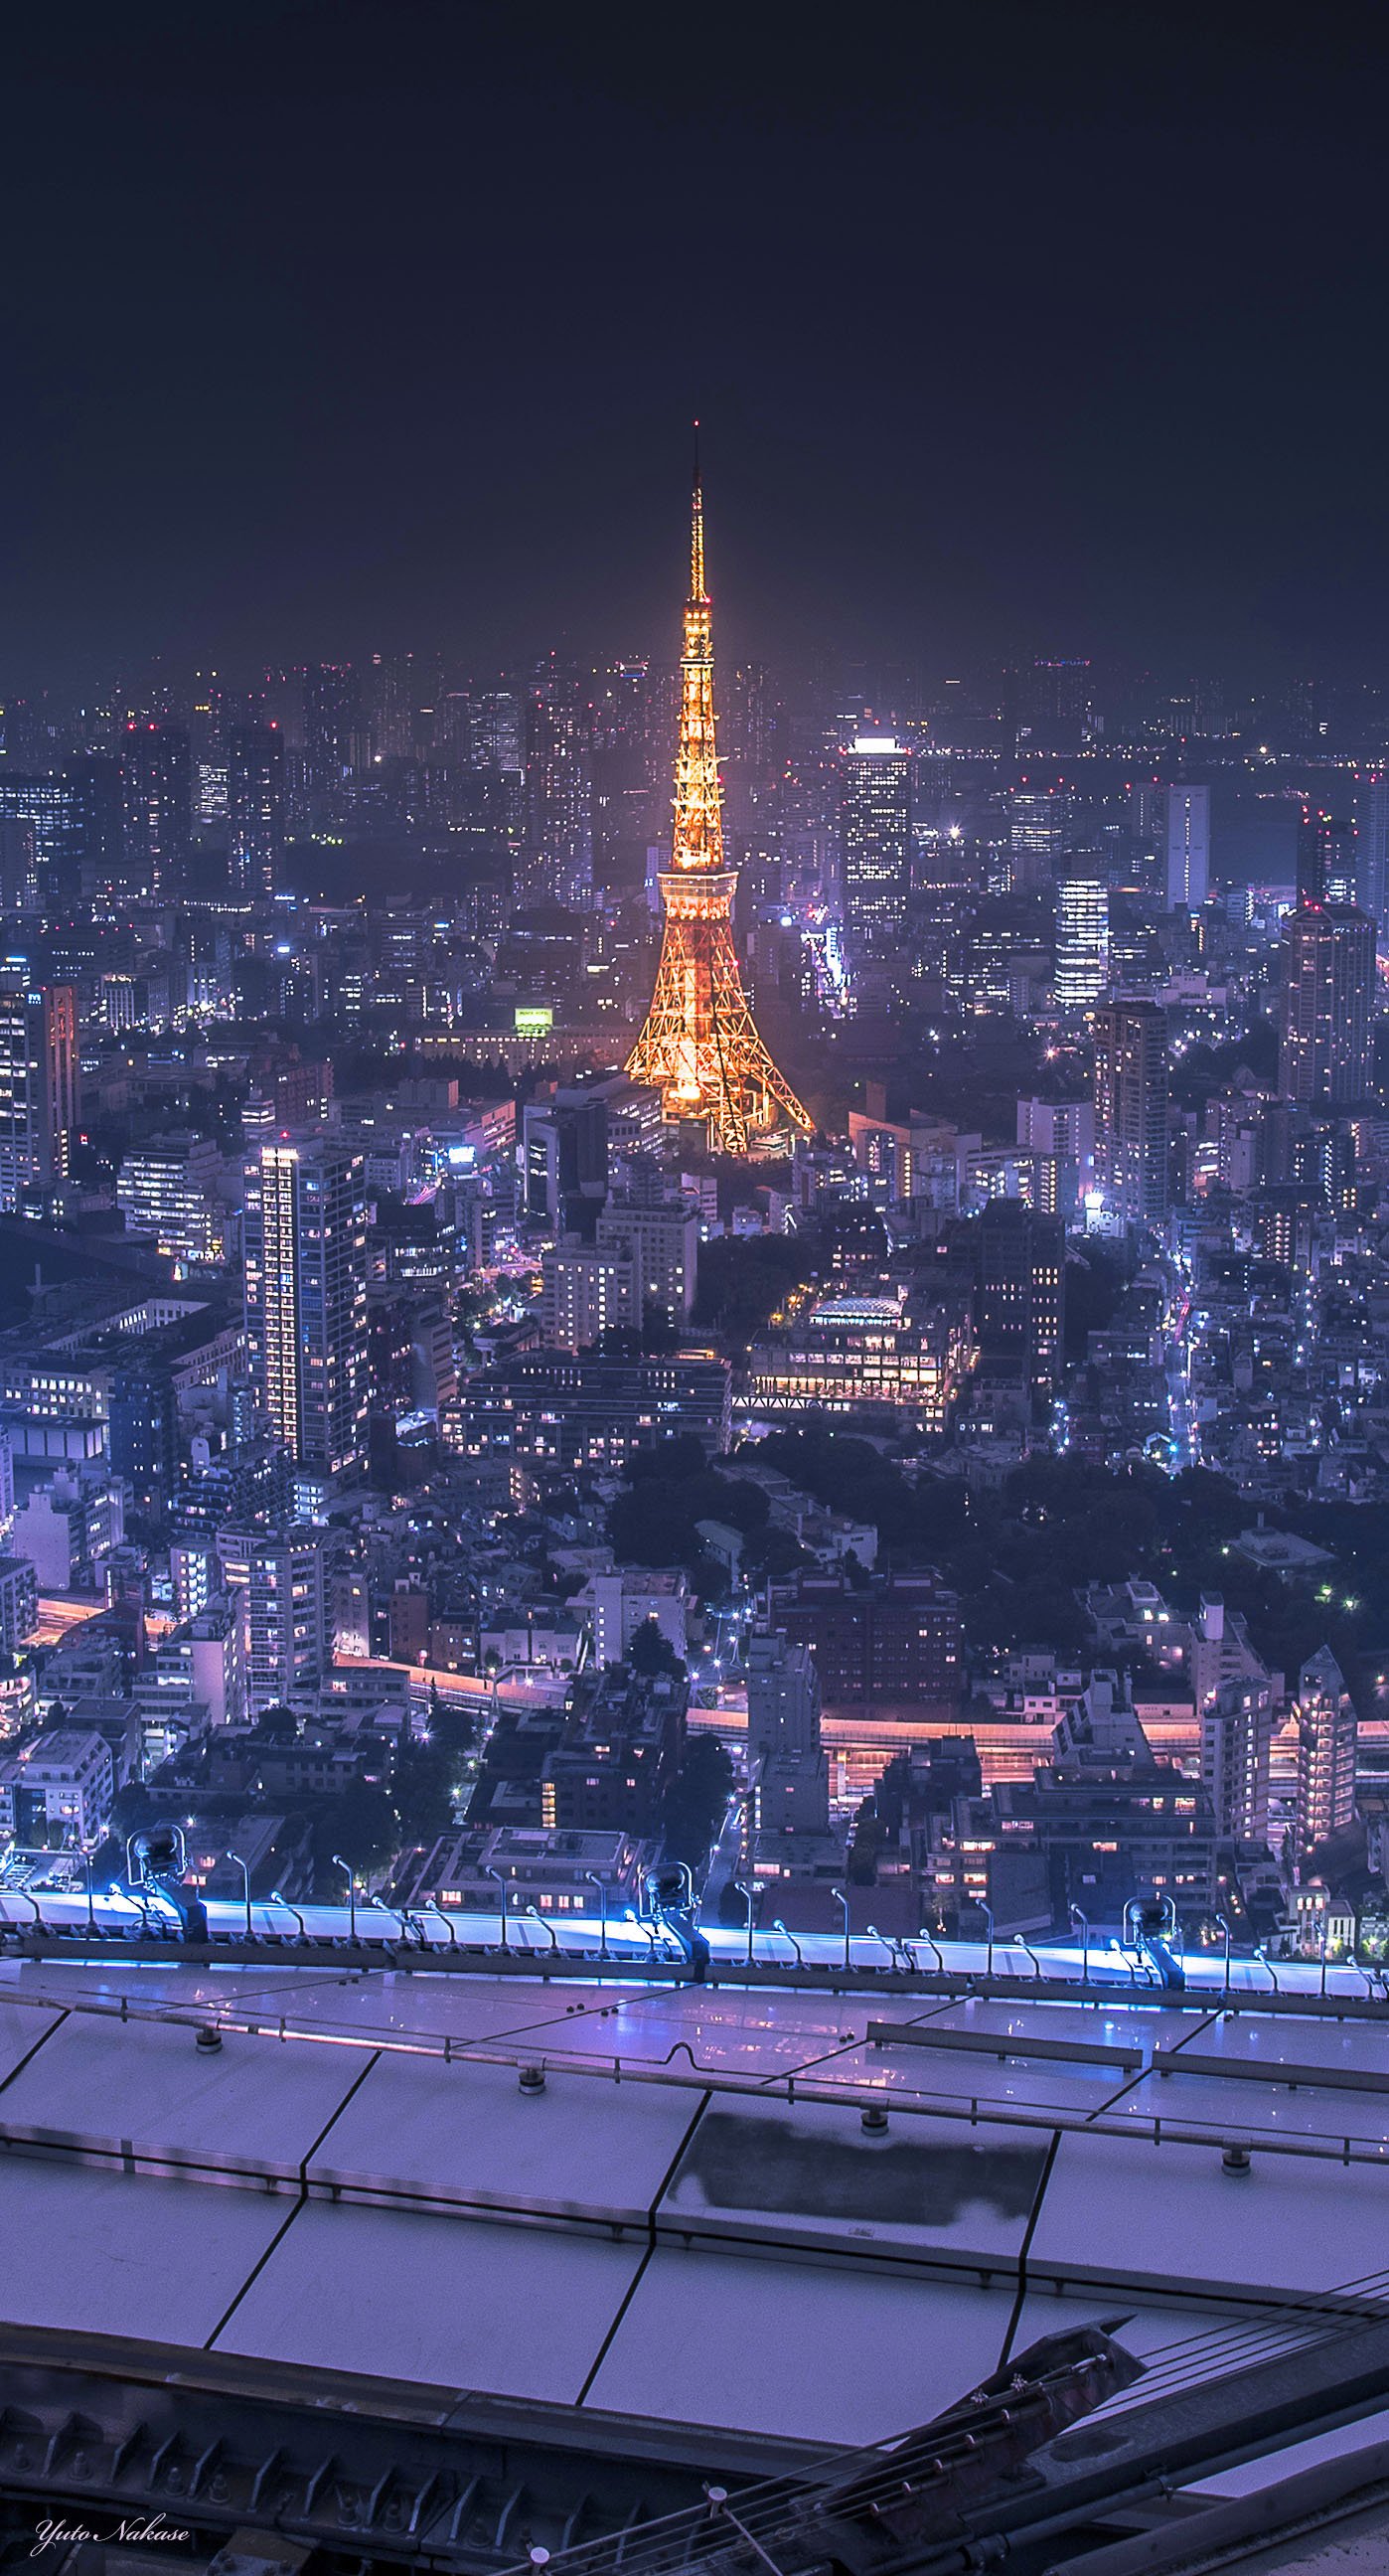 中瀬雄登 写真教室 エヌピクチャーズ やってます 東京タワー大好きです 六本木ヒルズからと晴海ふ頭からの夜景です スマホの壁紙として使用できるサイズです Iphone壁紙 ニッポンを撮る 東京タワー 六本木ヒルズ 晴海ふ頭 夜景 T